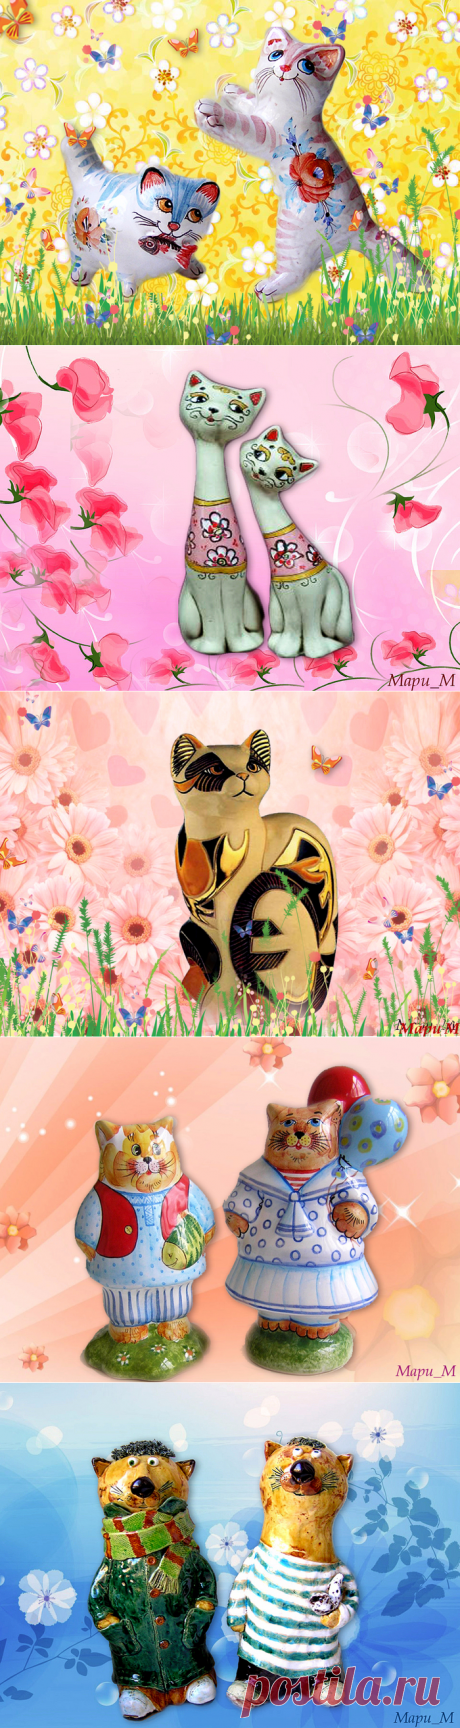 Забавные керамические коты на моих цветочных фонах...